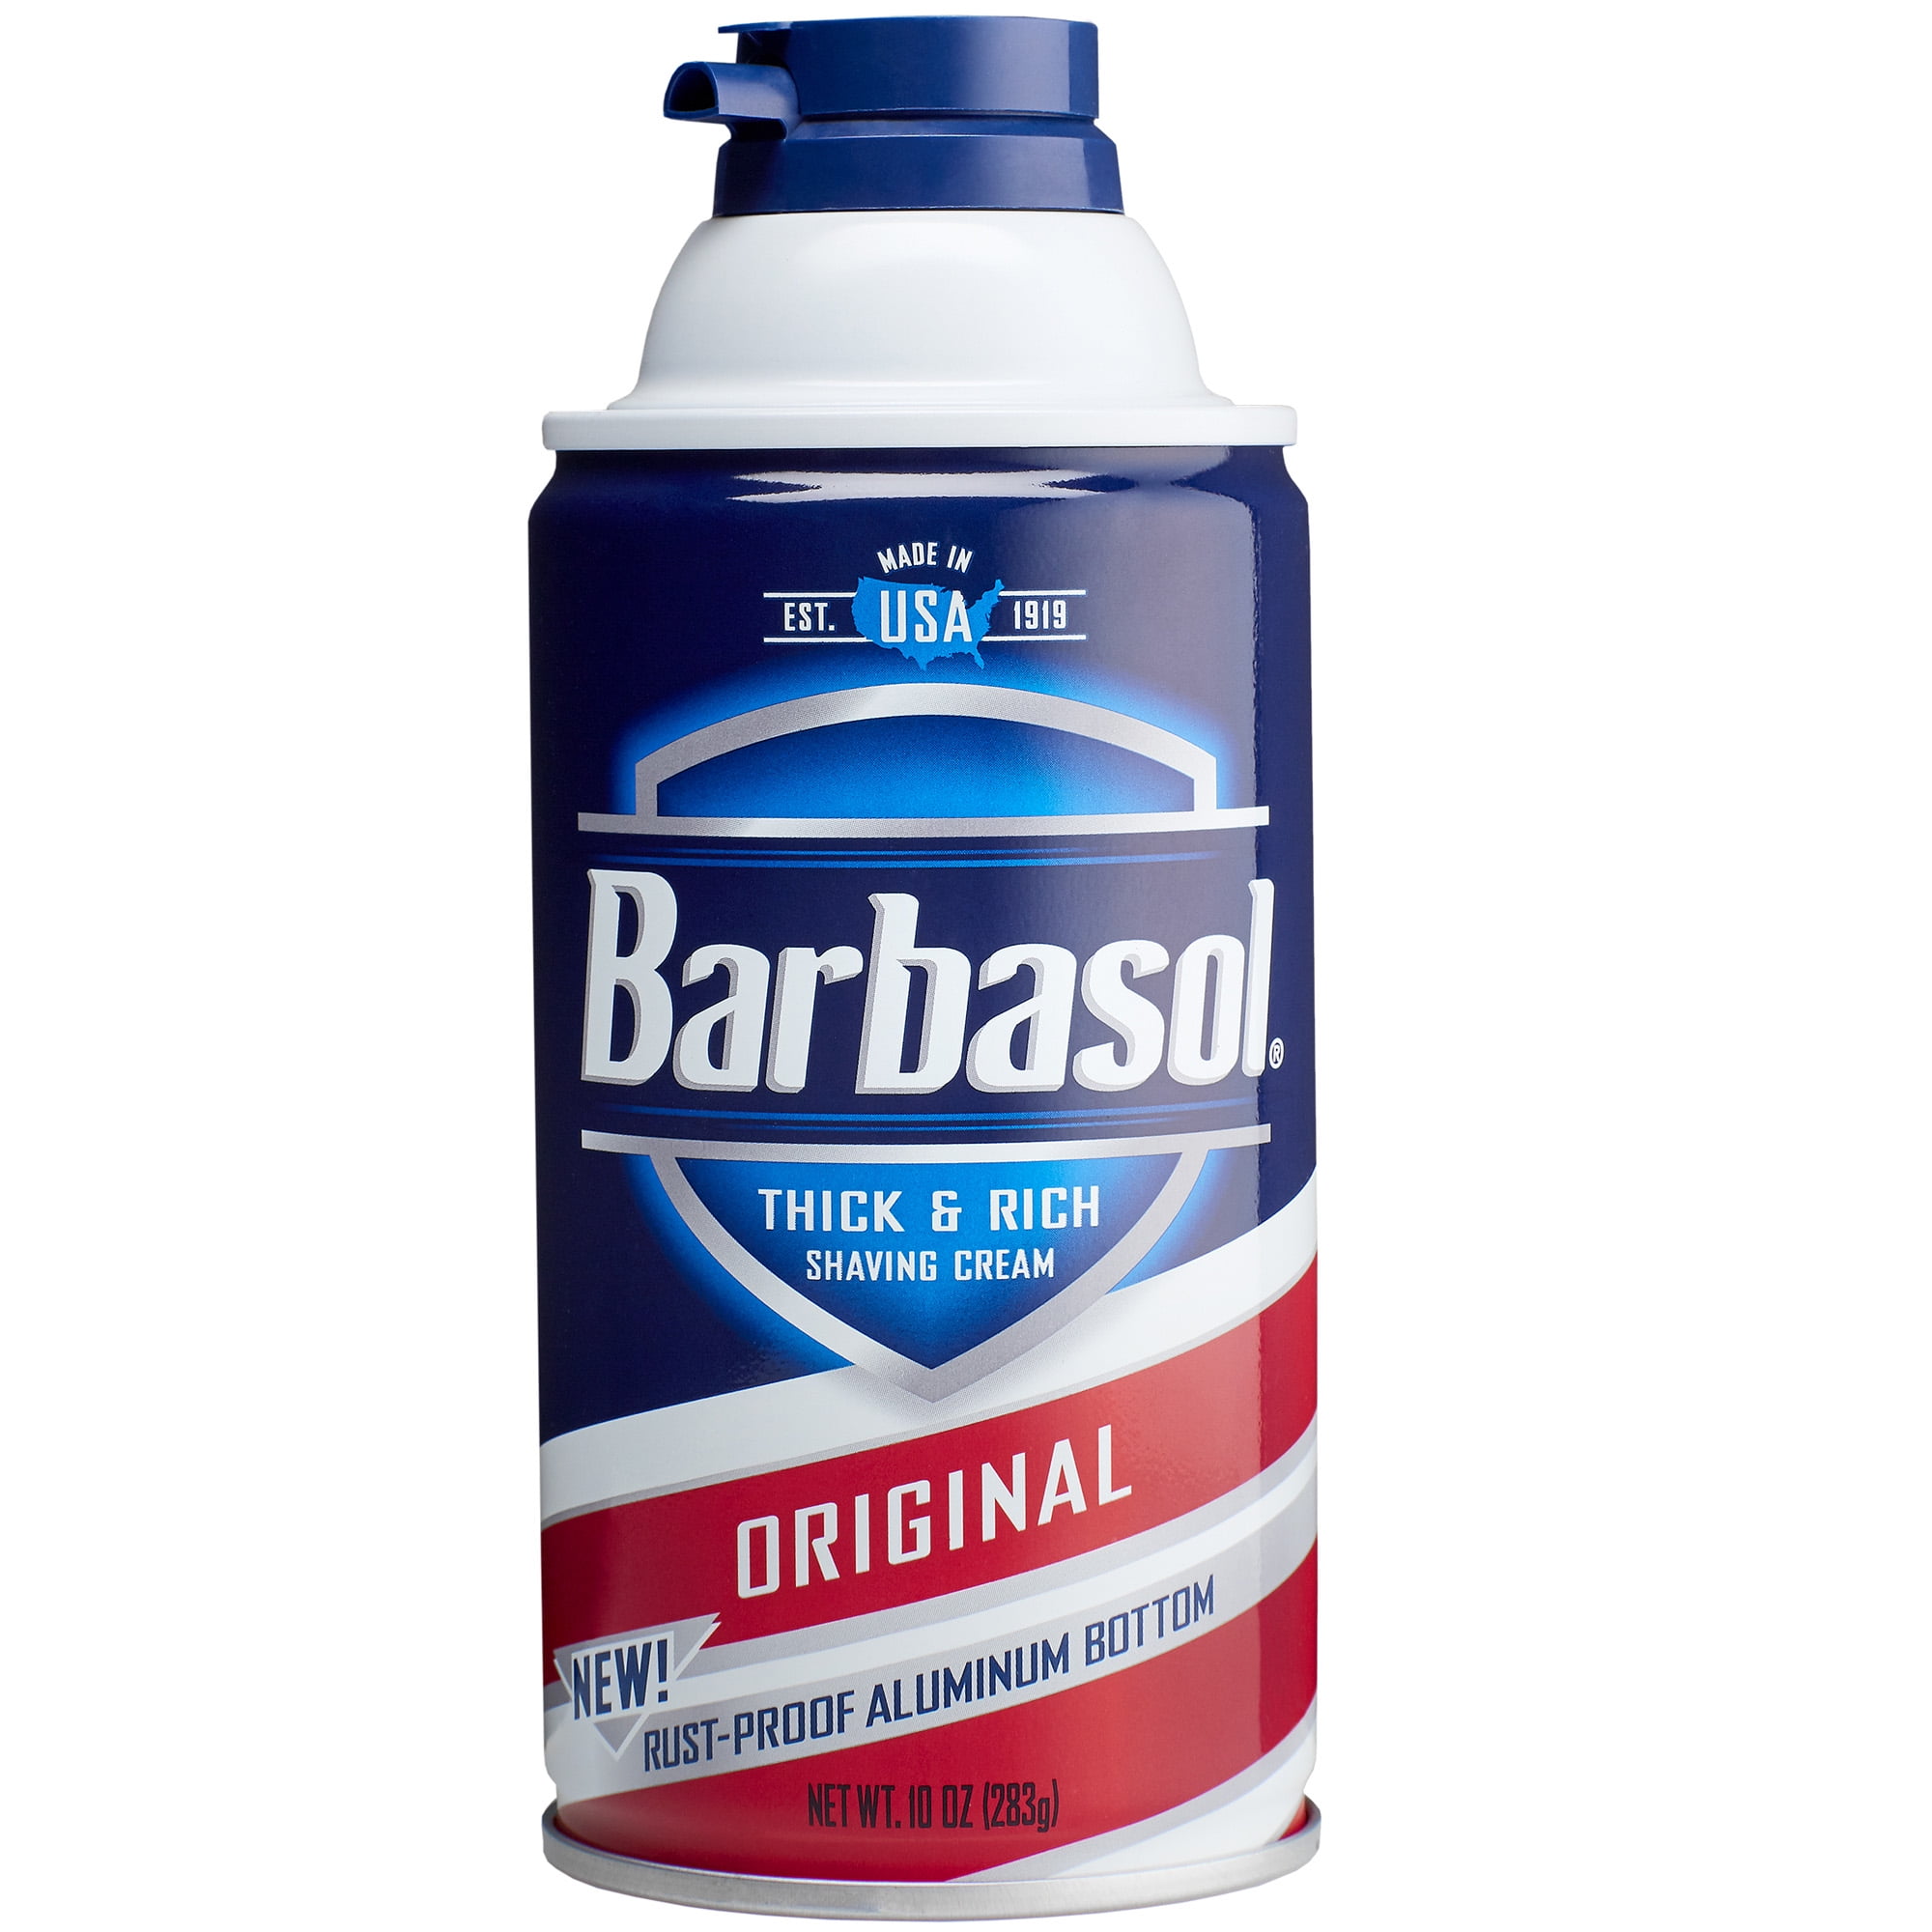 Barbasol Original Thick & Rich Shaving Cream for Men, 10 Oz.